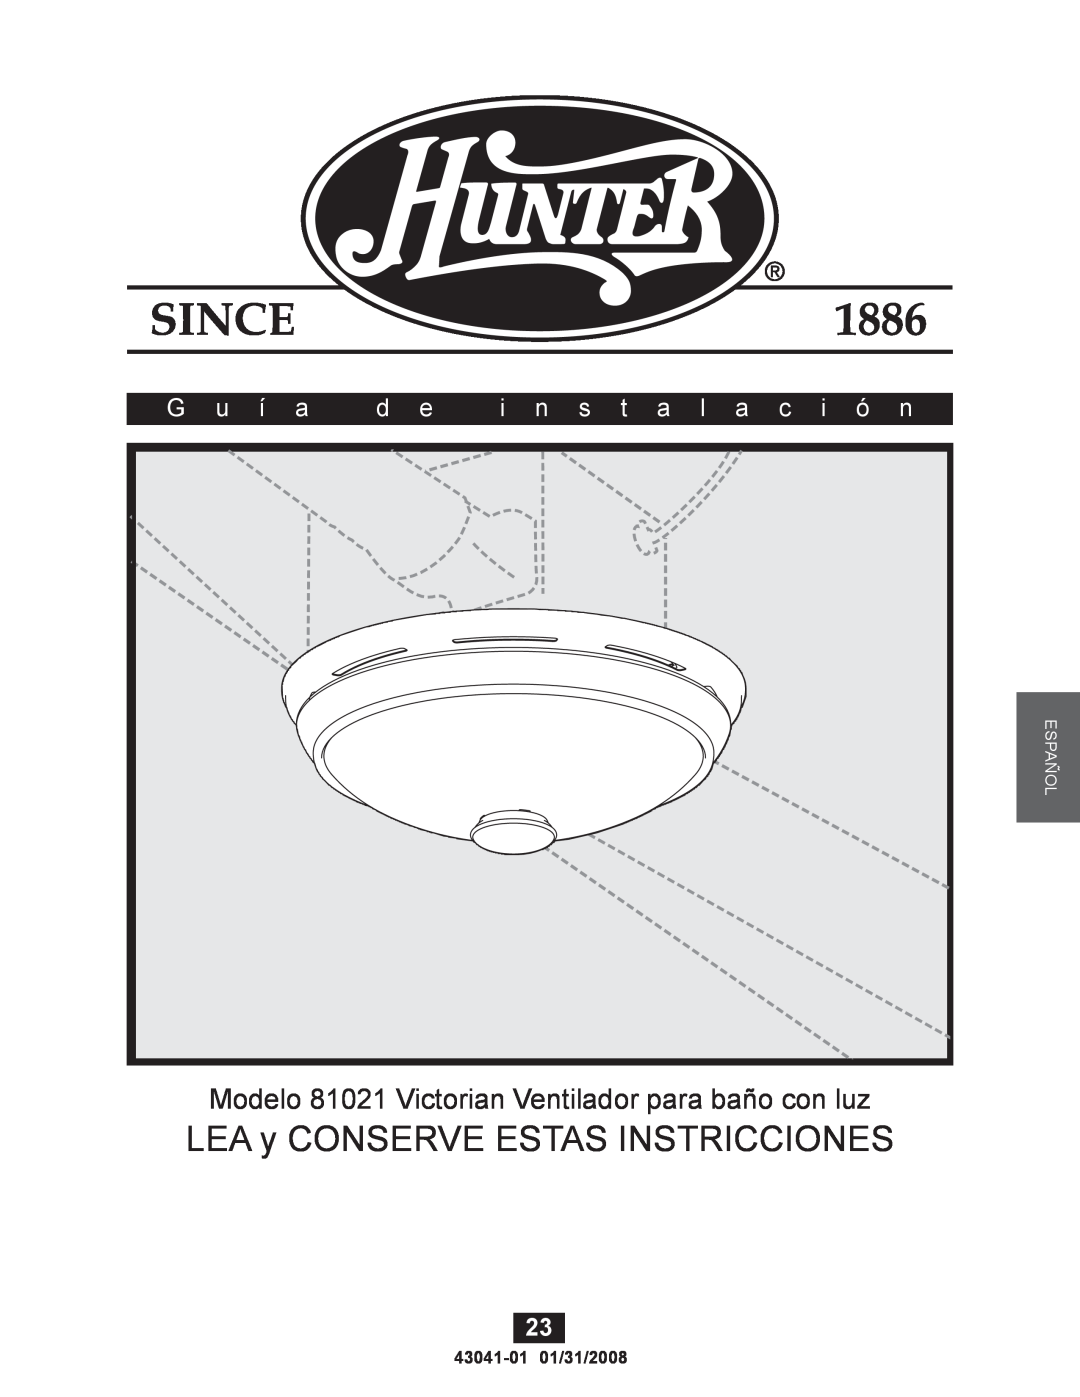 Hunter Fan 43041-01 manual LEA y CONSERVE ESTAS INSTRICCIONES, Modelo 81021 Victorian Ventilador para baño con luz, G u í a 